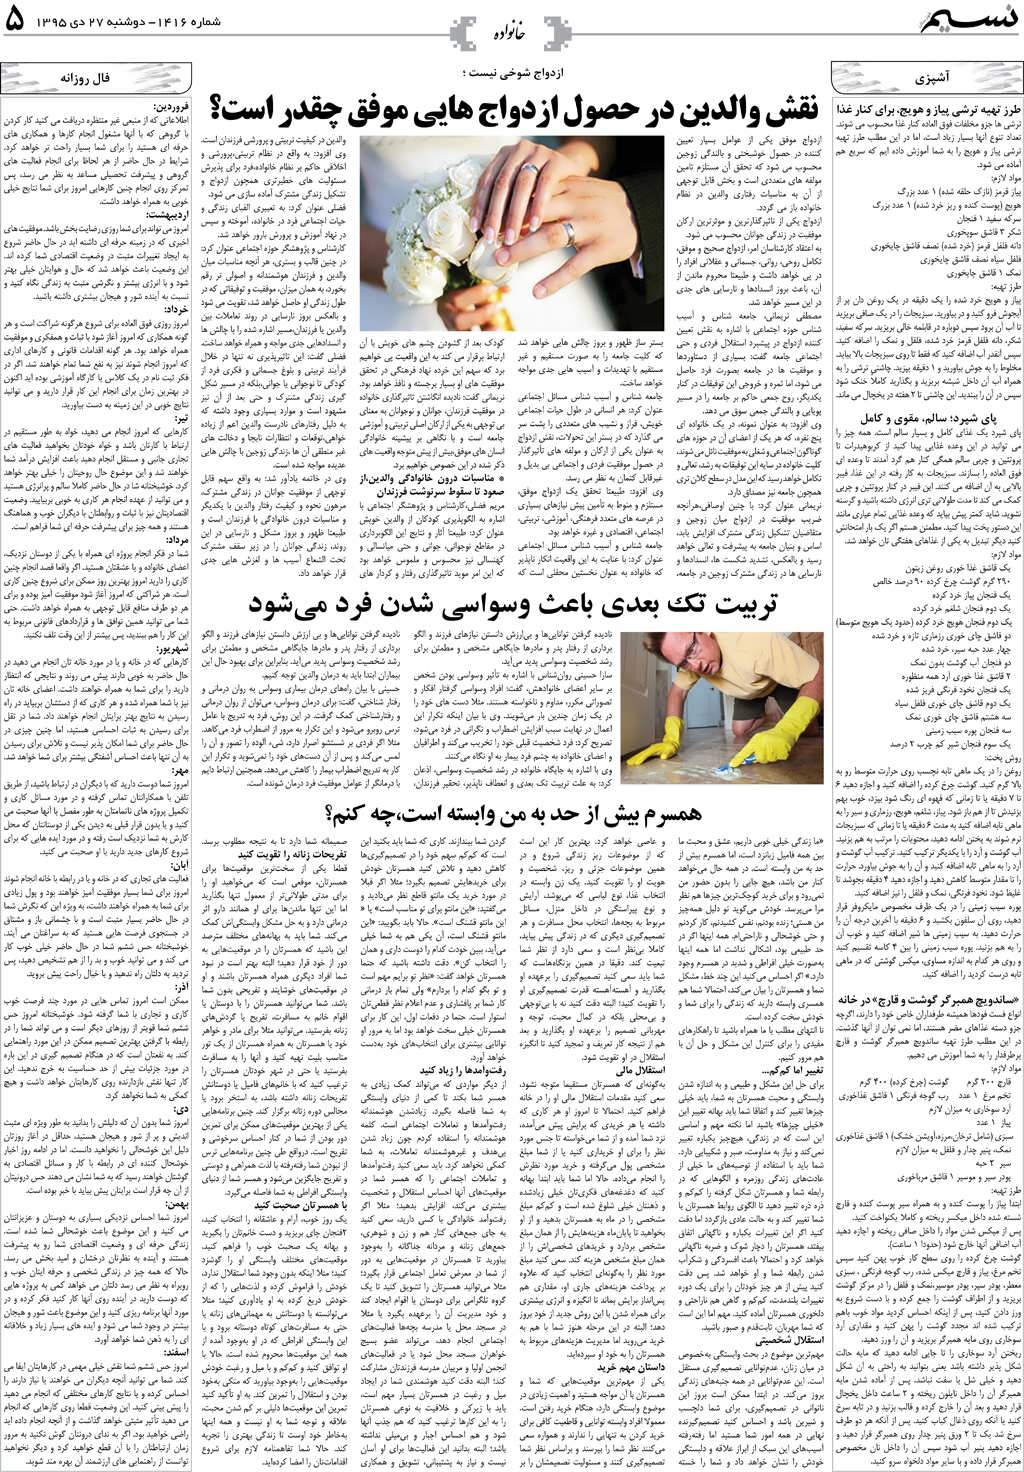 صفحه خانواده روزنامه نسیم شماره 1416